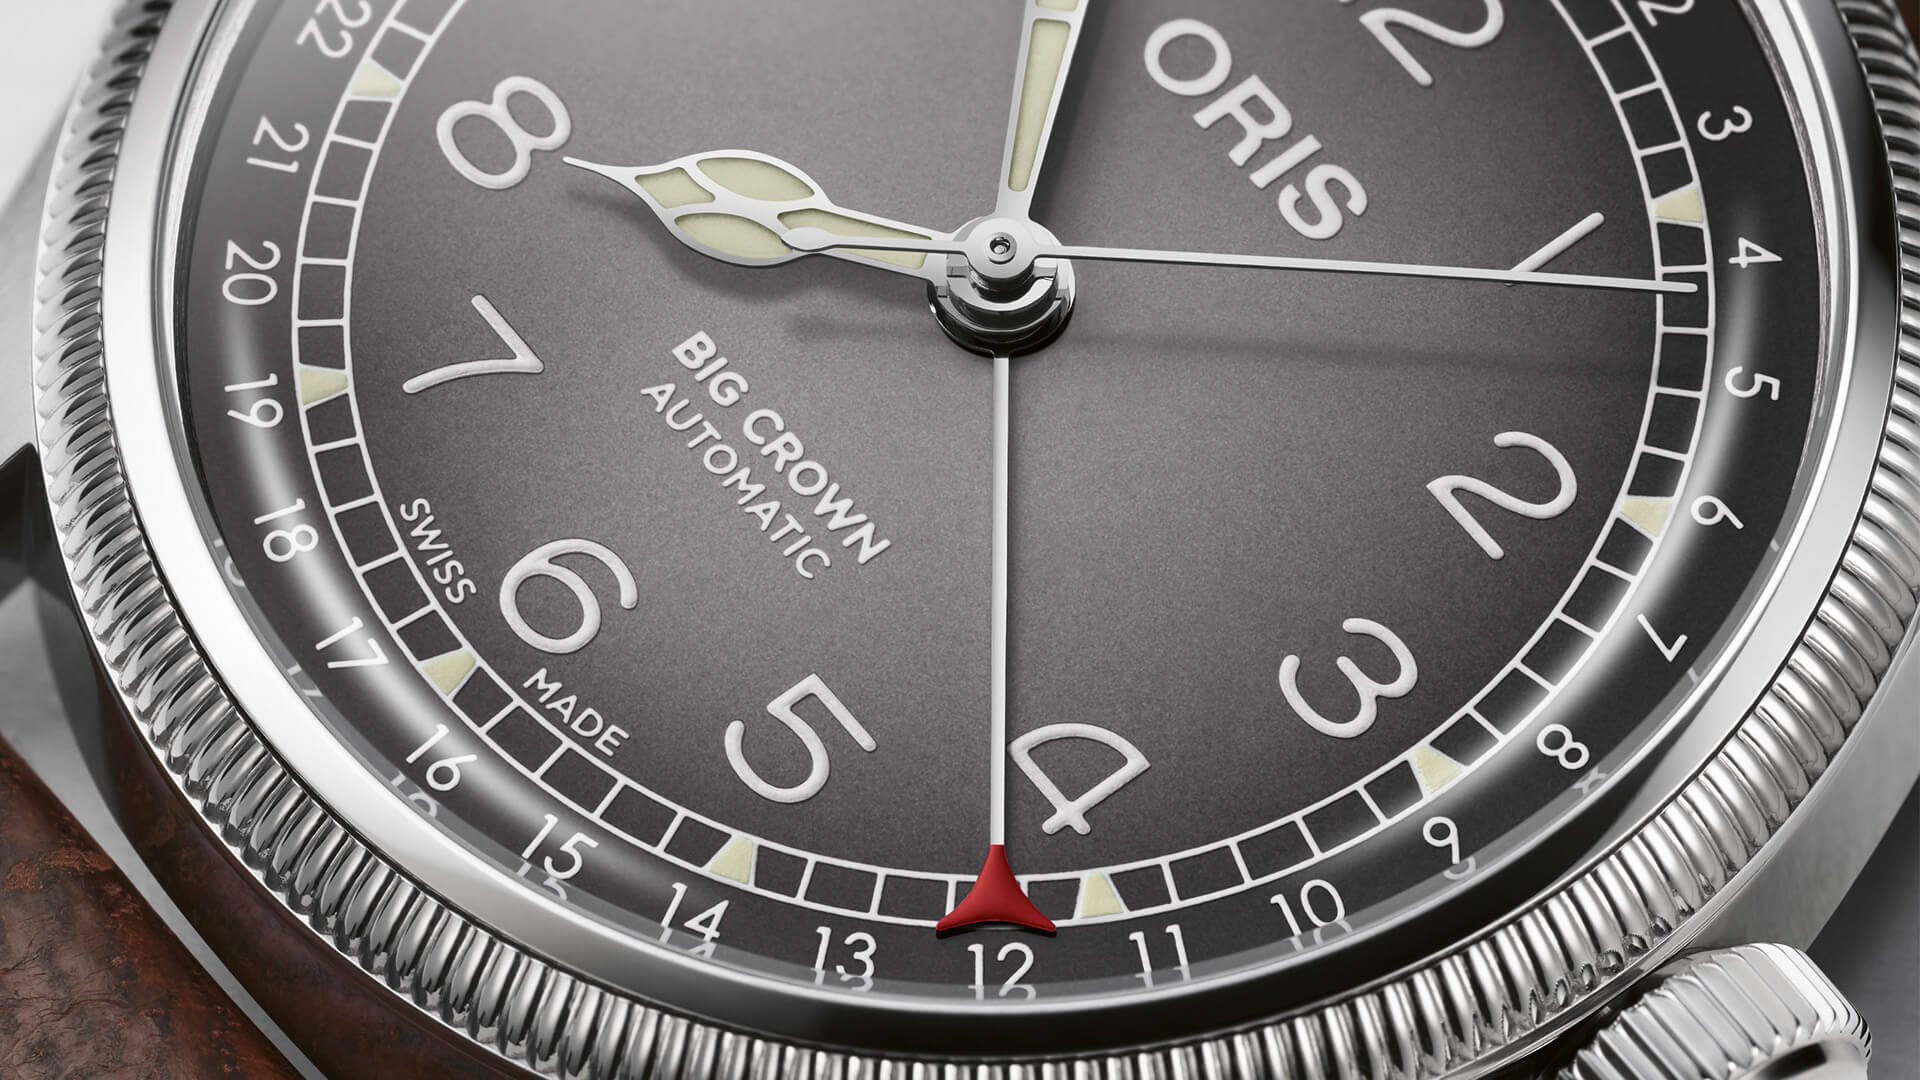 オリス X チェルボボランテ - Big Crown - 時計 - 01 754 7779 4063-Set - オリス。スイスウォッチ  １９０４年ヘルシュタインにて創業。